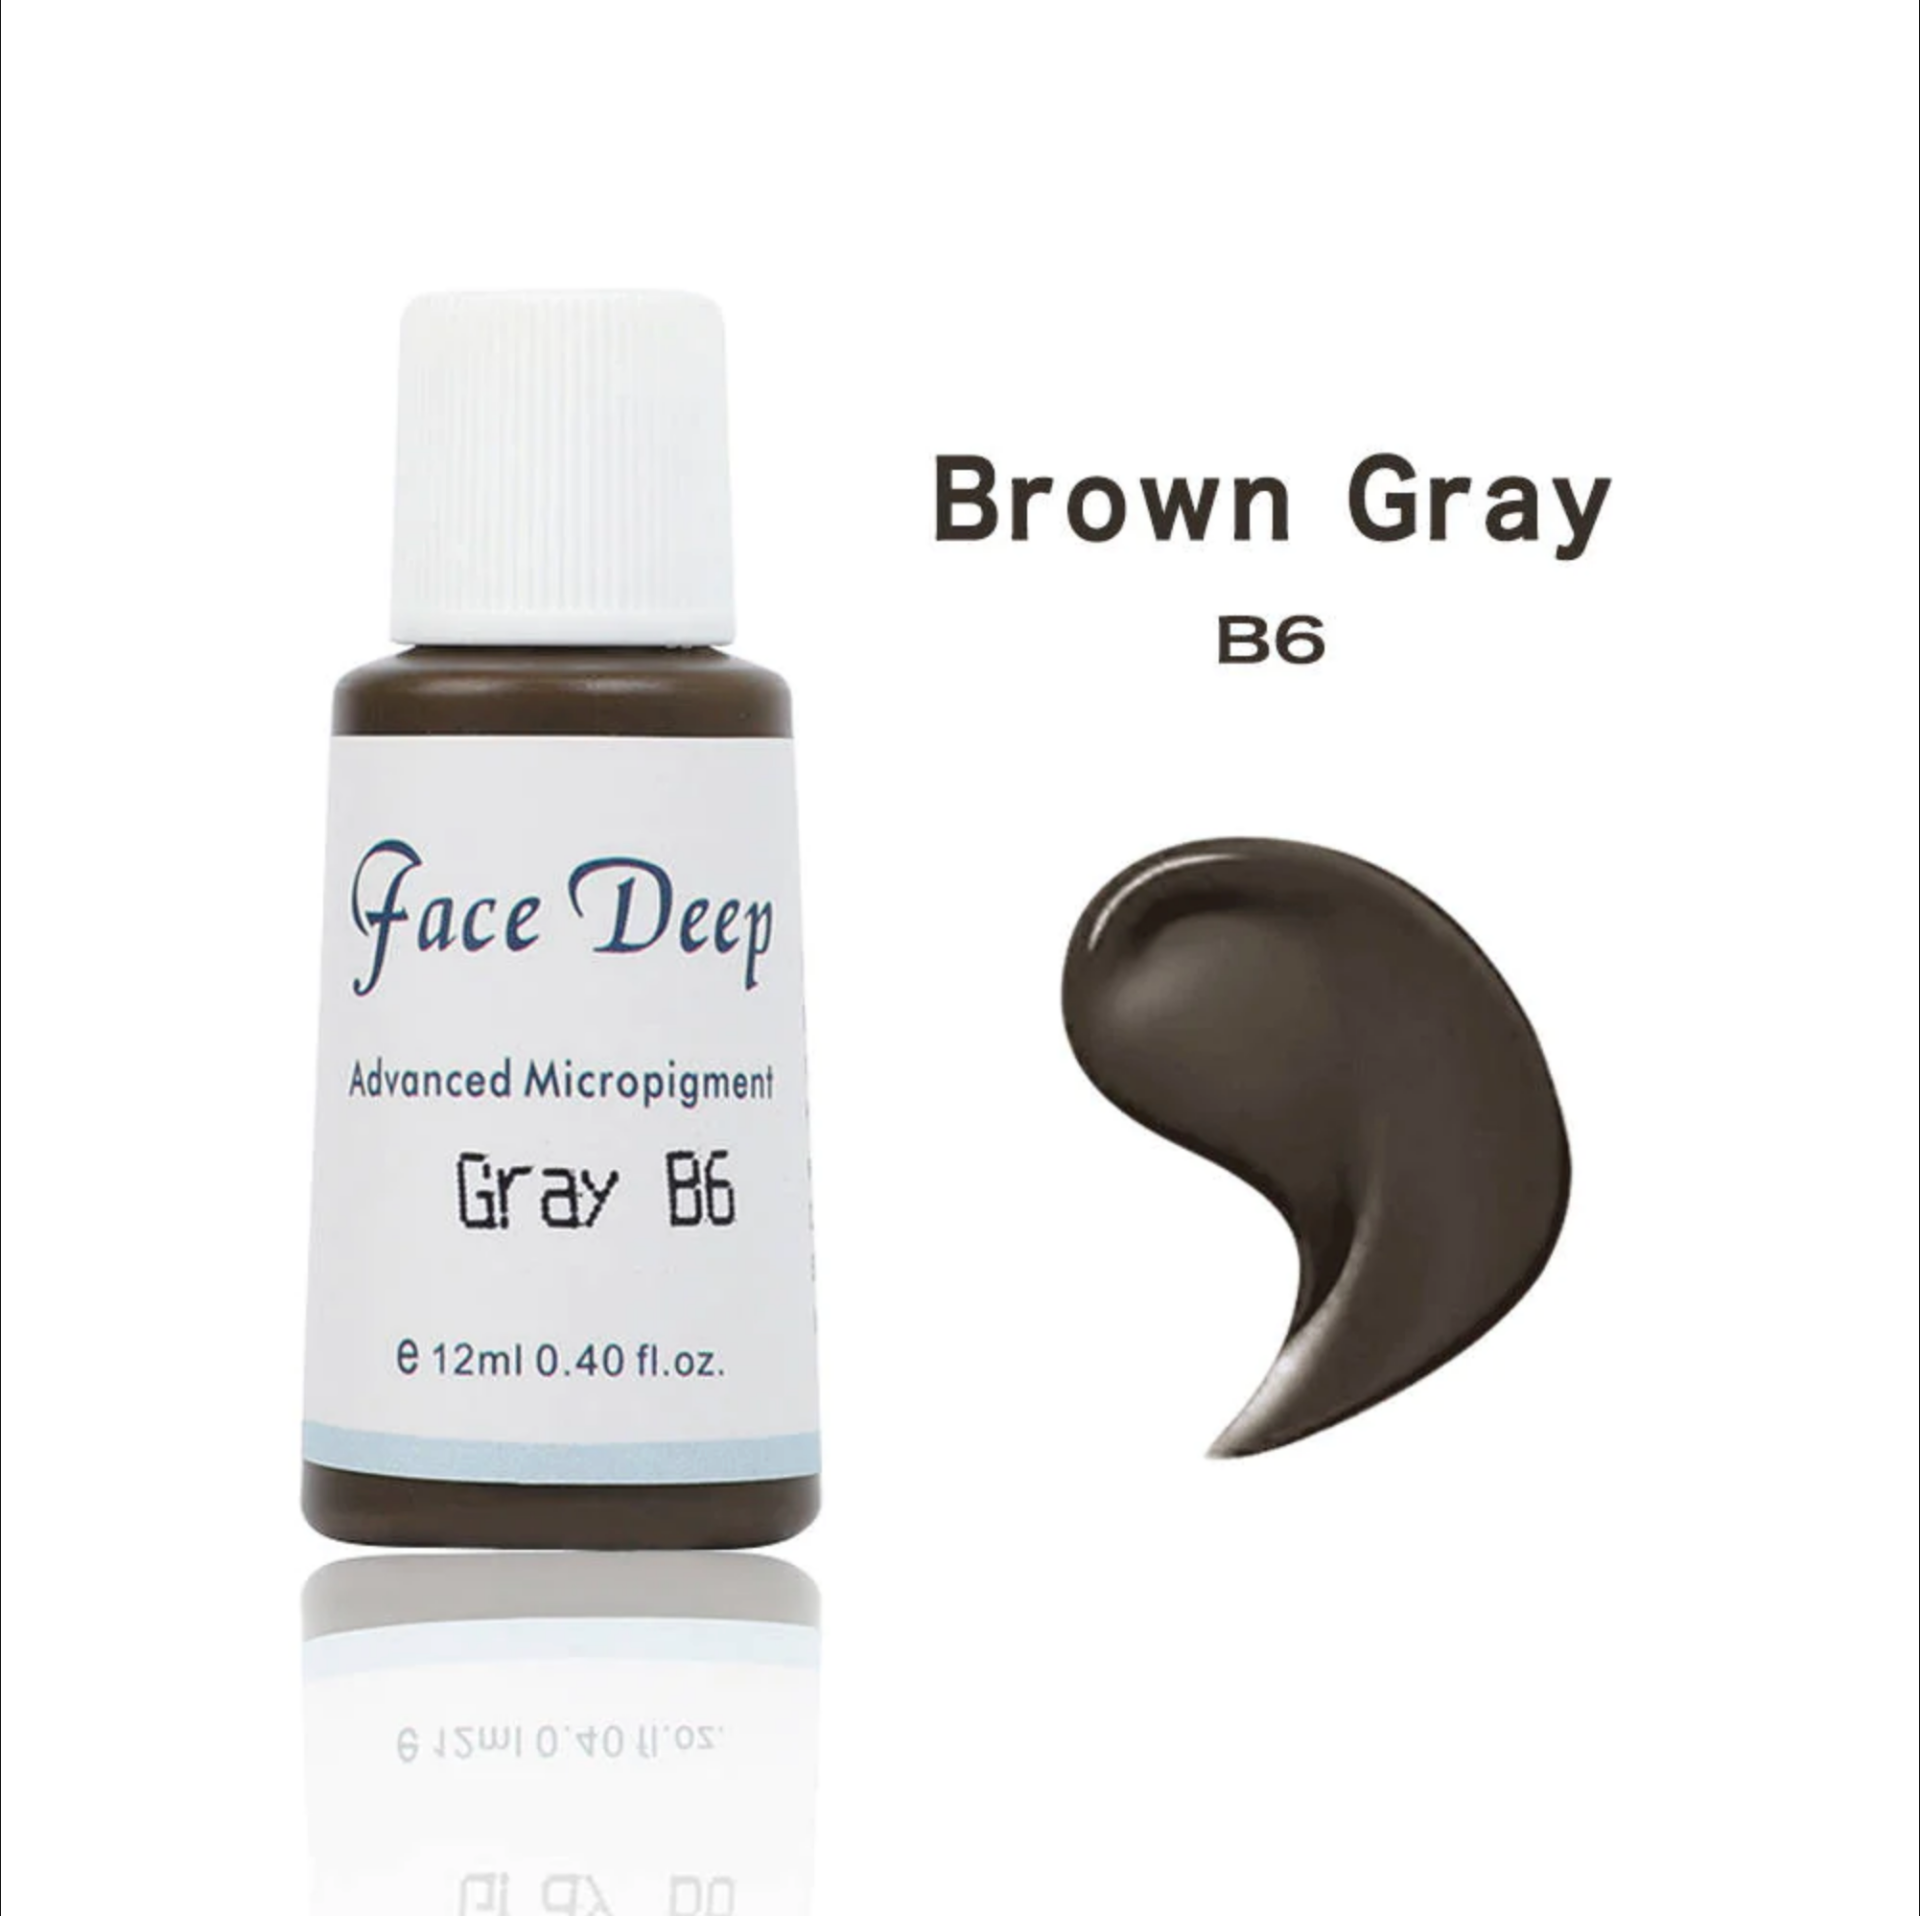 Face Deep B6 Brown Gray Kahverengi Kaş için Kalıcı Makyaj Boyası 12ml